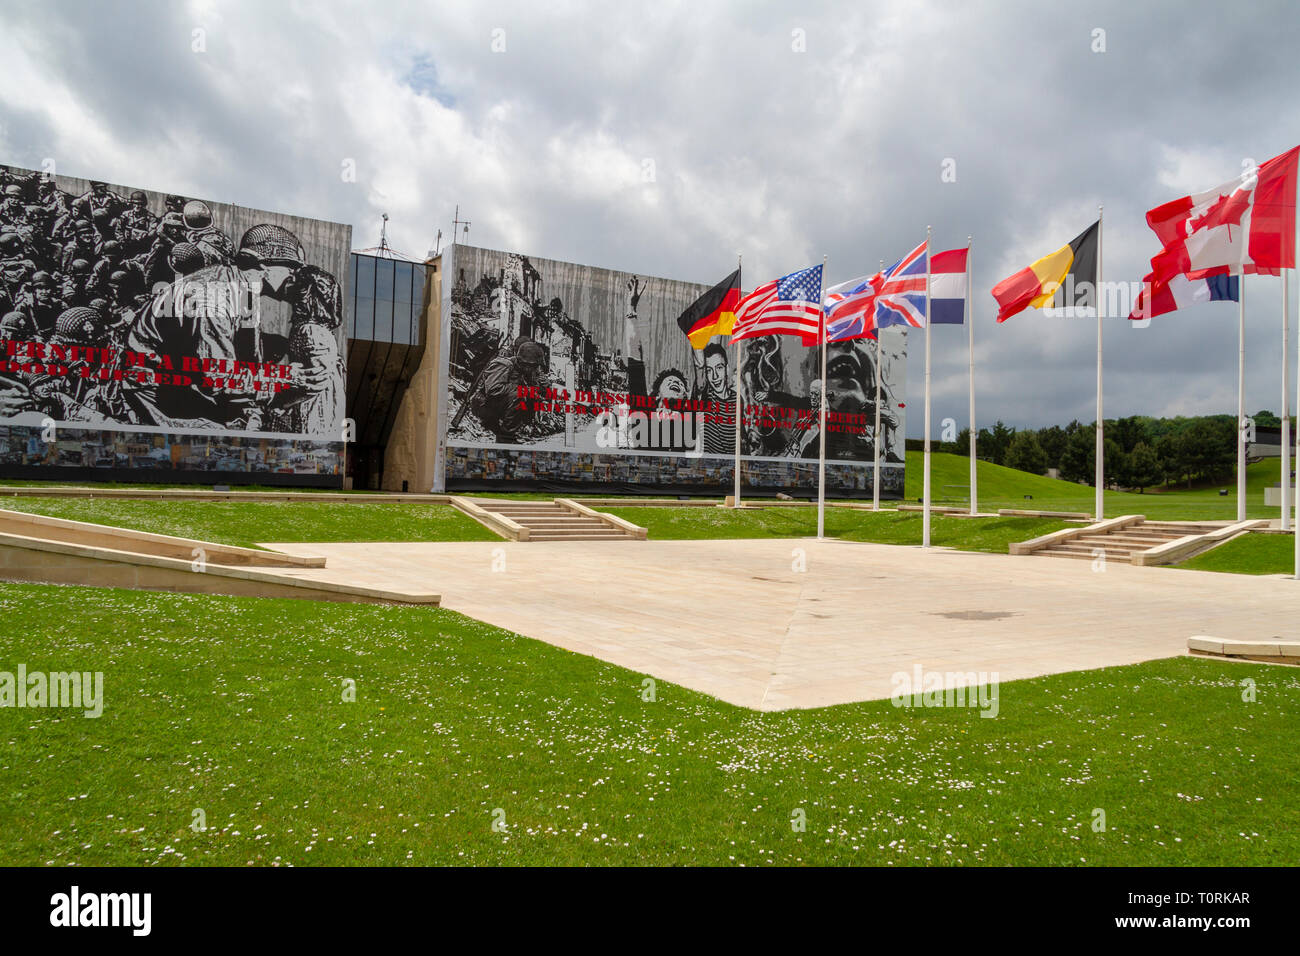 Drapeaux au vent à l'extérieur du Mémorial de Caen (Mémorial de Caen), Normandie, France. Banque D'Images